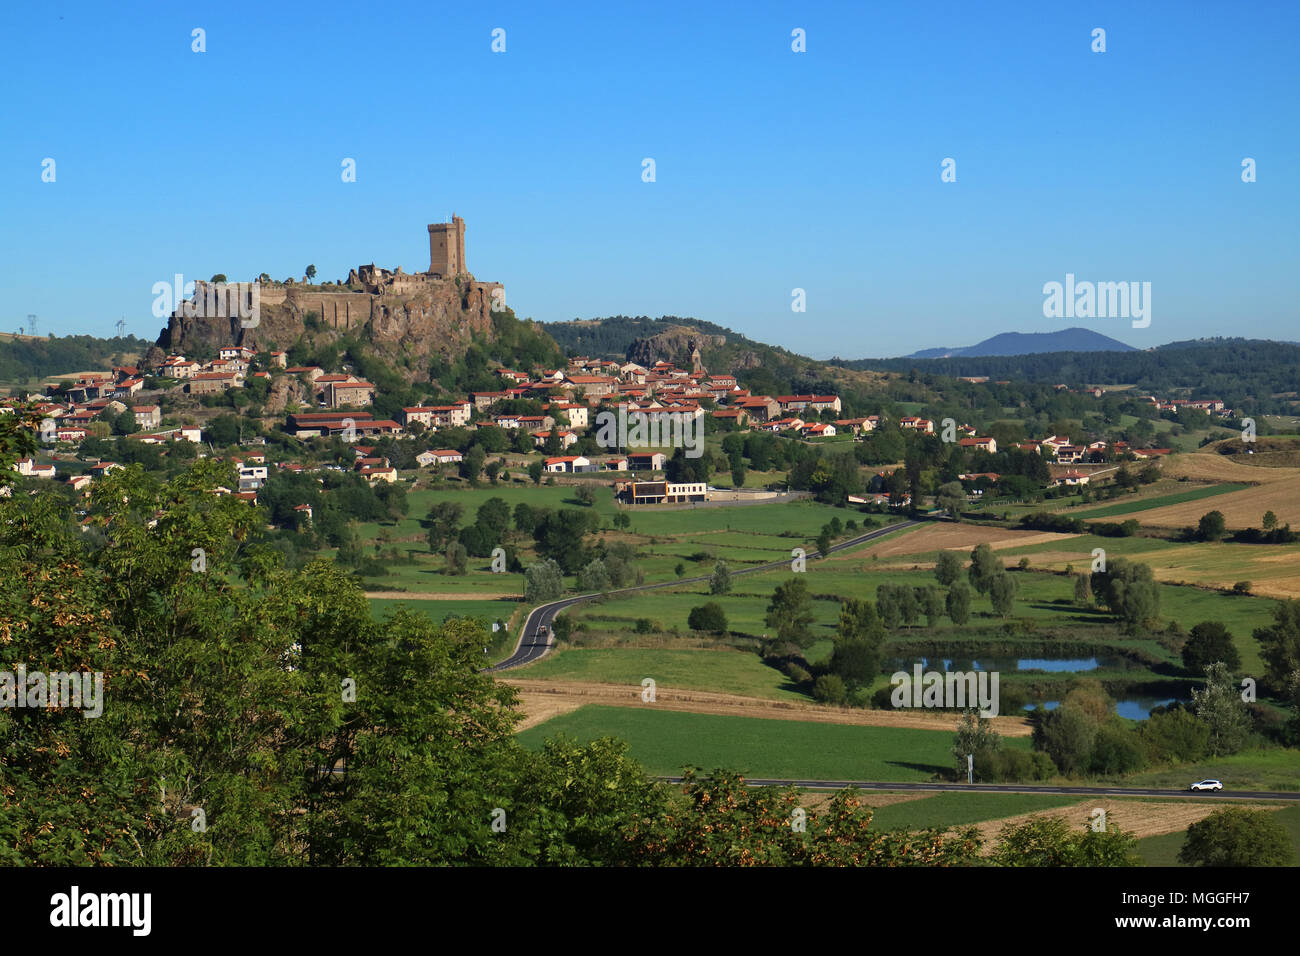 Vista de la ciudad de Polignac, cerca de Le Puy-en-Velay, dominado por la "Fortresse de Polignac' con su plaza donjon, la torre de 32 m de altura, Auvergne, Francia Foto de stock